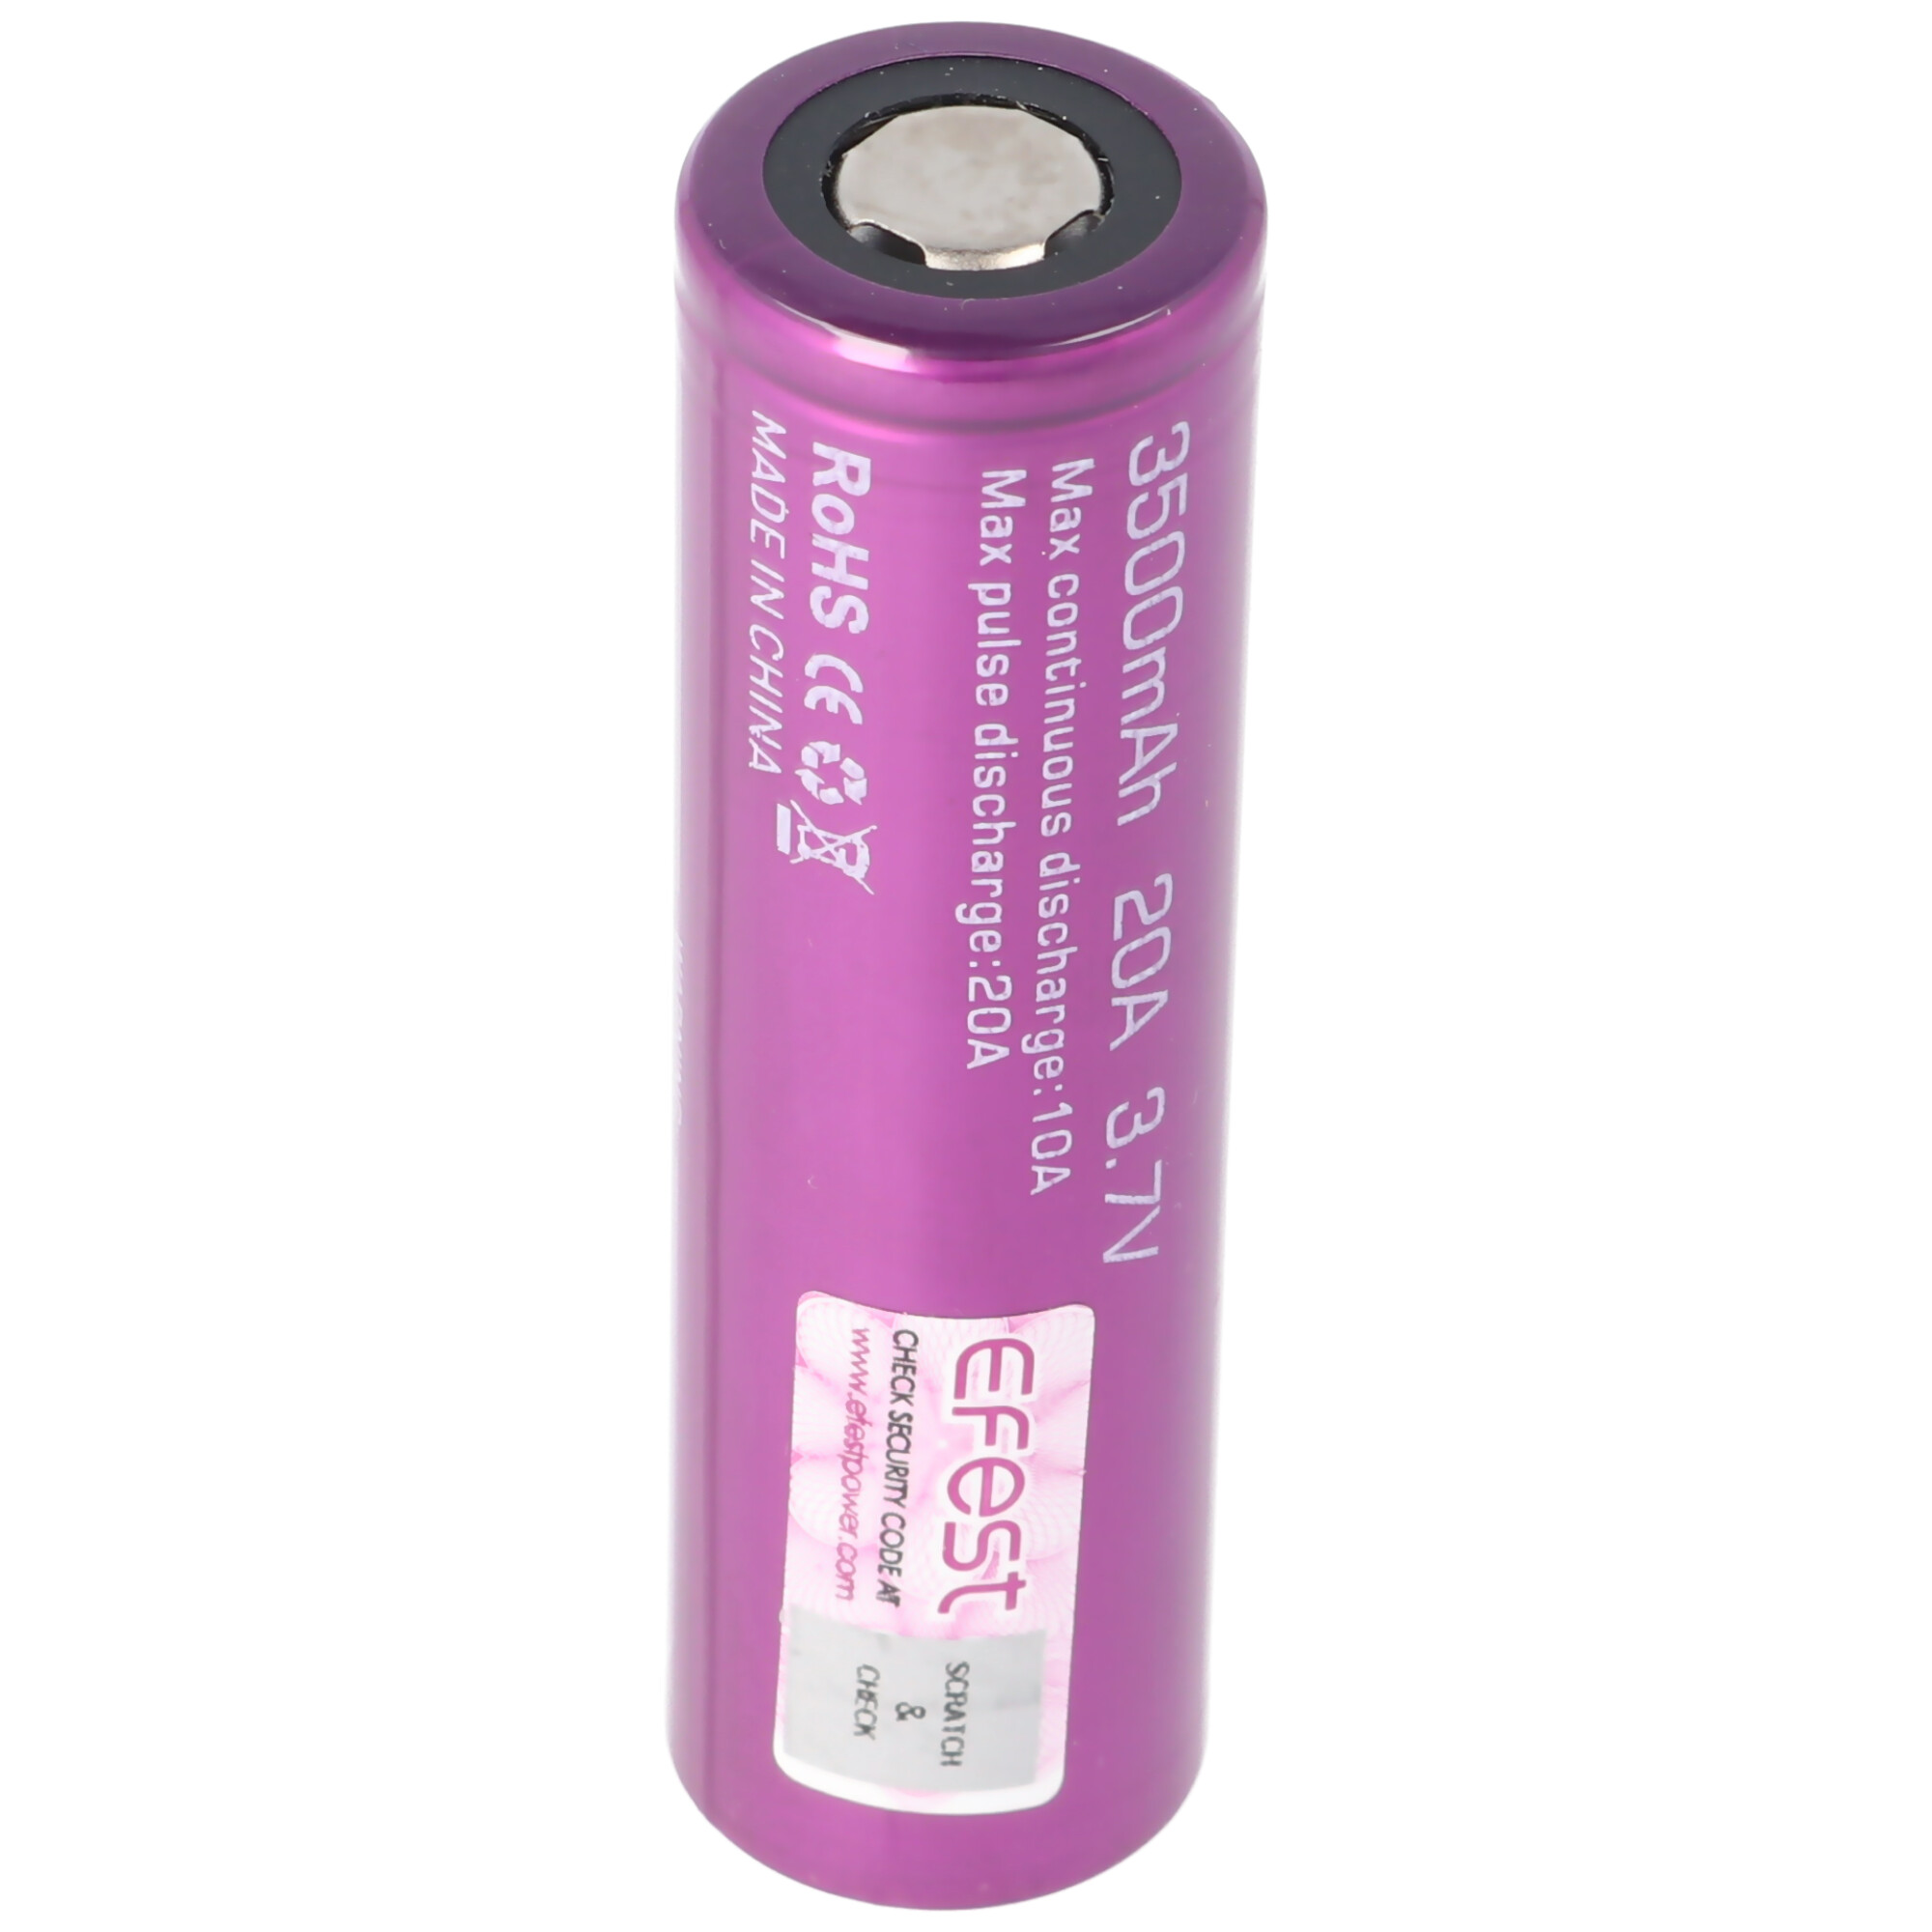 Batterie/Pile 18650 3.6V 3500 mAh